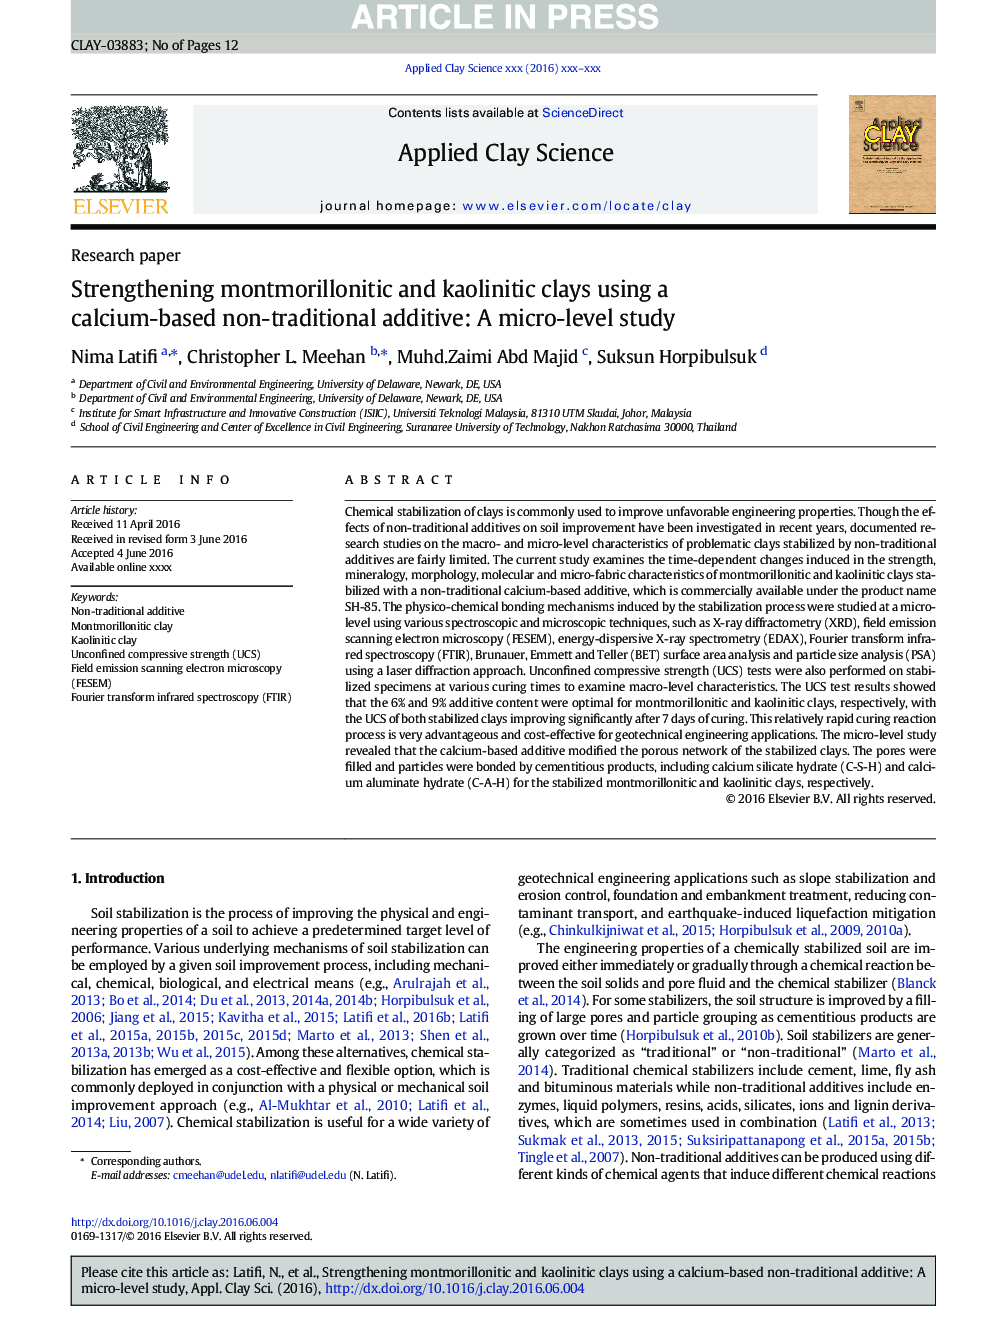 تقویت رسوبات مونتموریلونیتی و کائولینیتی با استفاده از یک افزودنی غیر سنتی مبتنی بر کلسیم: یک مطالعه در سطح میکرو 